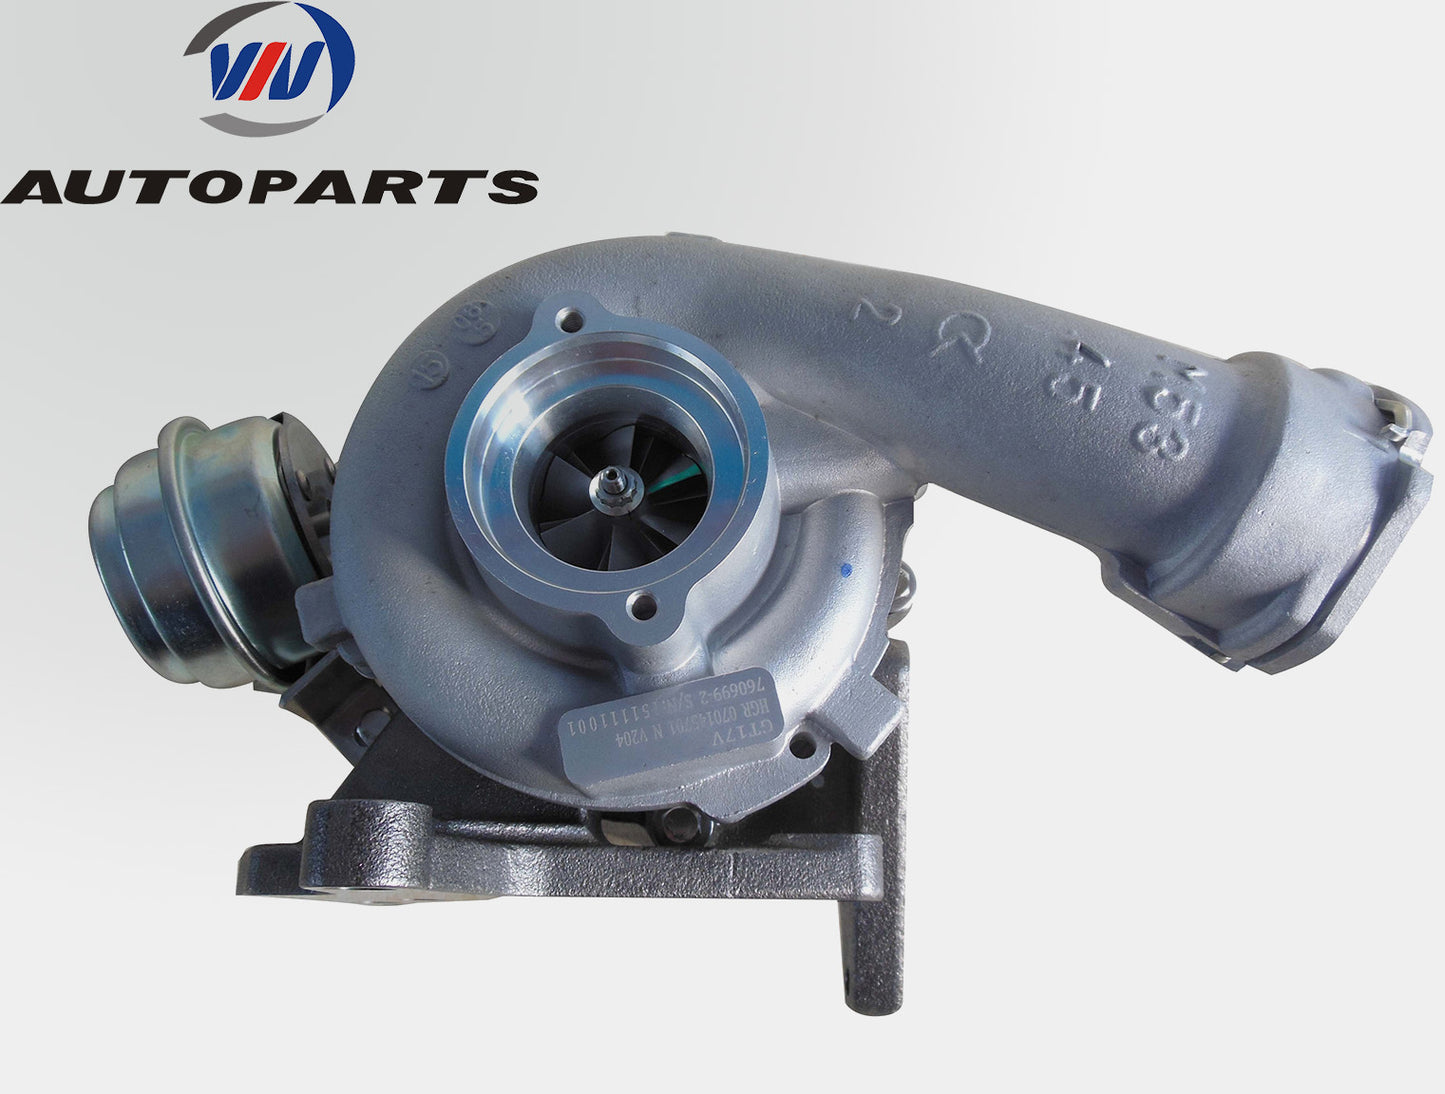 Turbocharger 760699-5004S for Volkswagen T5 Transporter 2.5L Diesel Engine